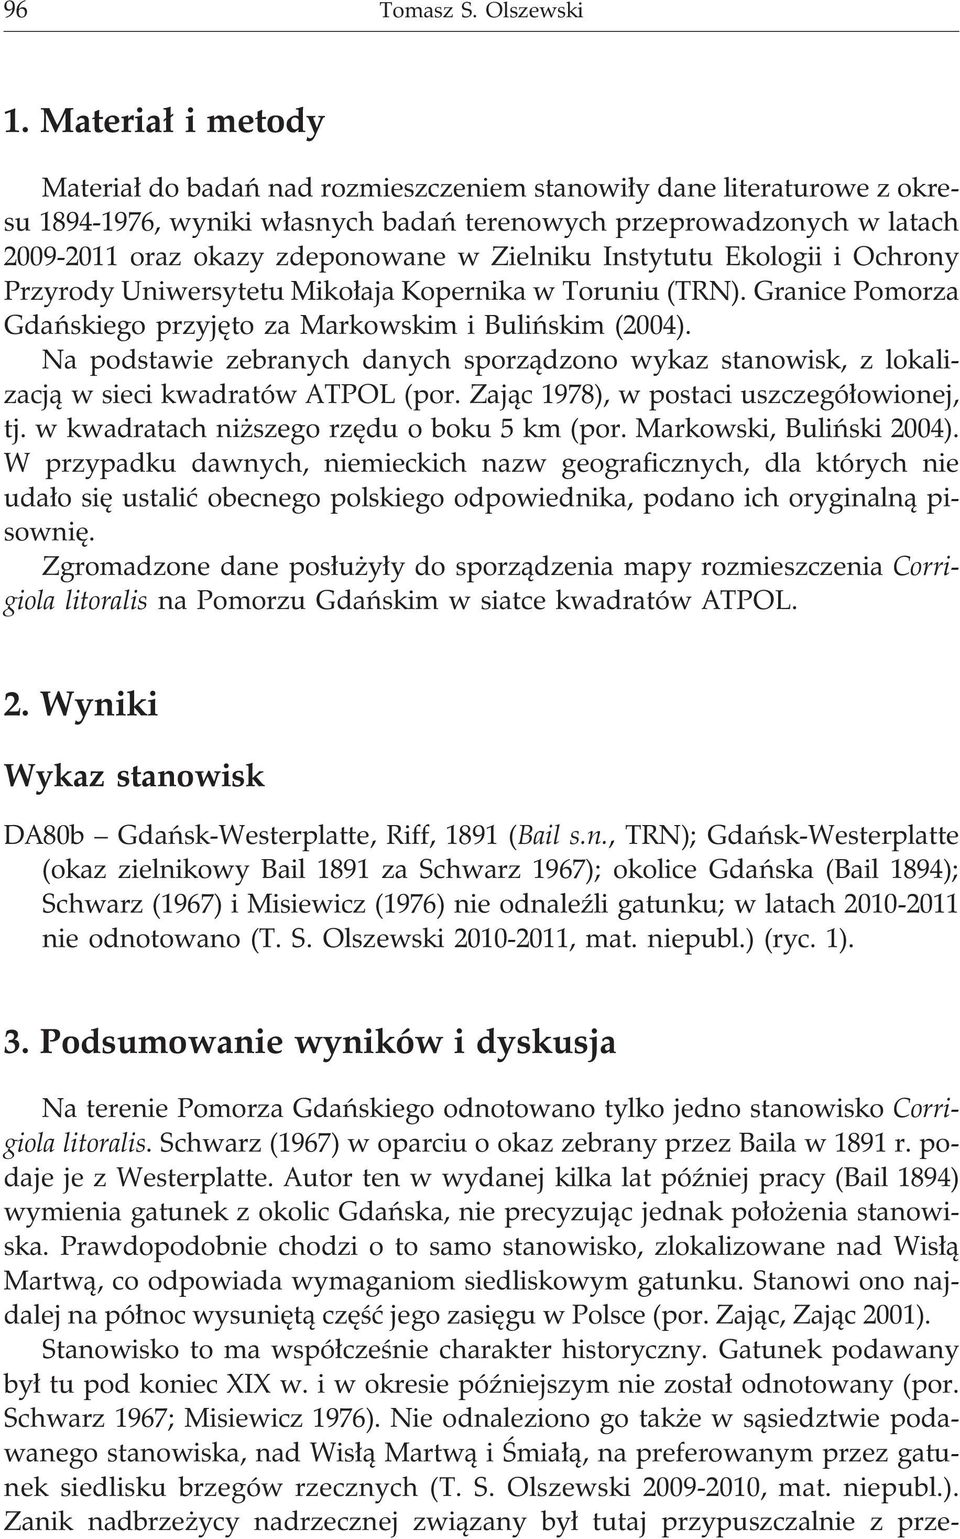 Zielniku Instytutu Ekologii i Ochrony Przyrody Uniwersytetu Miko³aja Kopernika w Toruniu (TRN). Granice Pomorza Gdañskiego przyjêto za Markowskim i Buliñskim (2004).